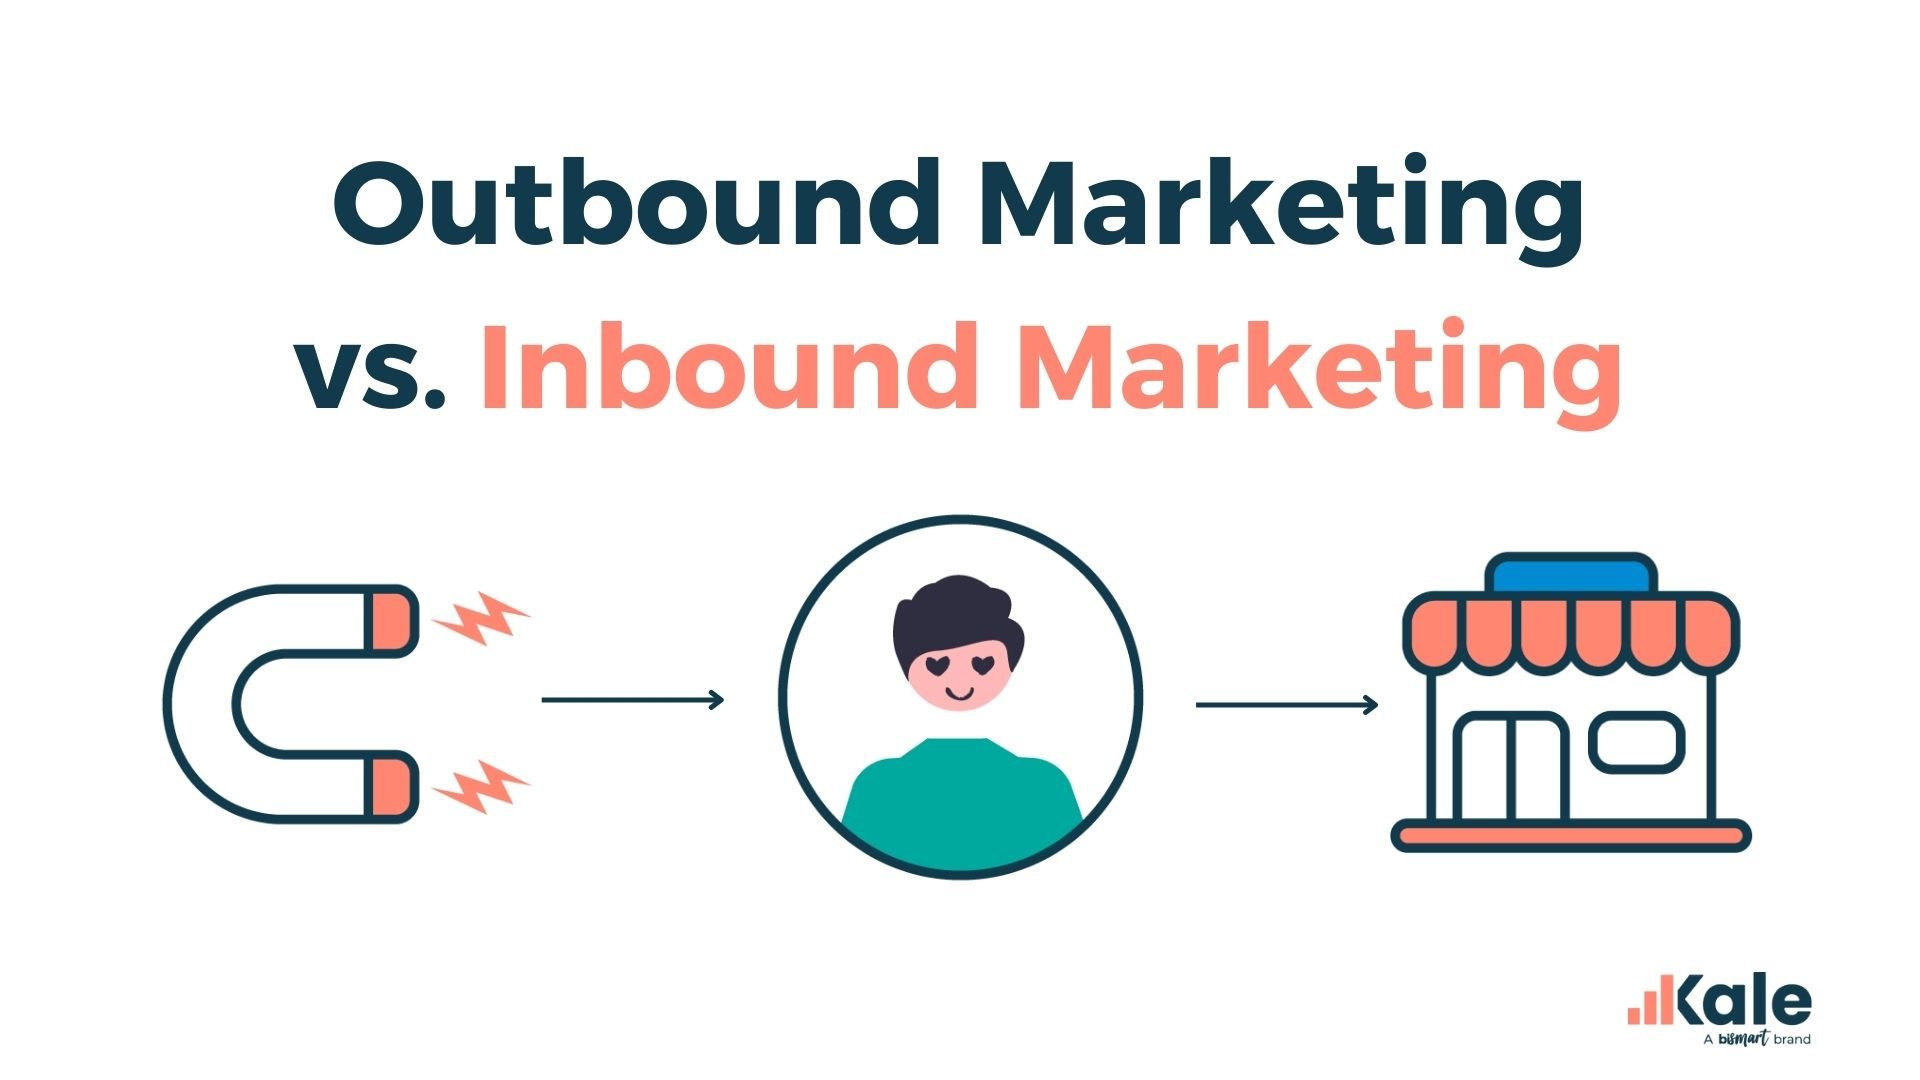 que es Inbound Marketing vs Outbound Marketing